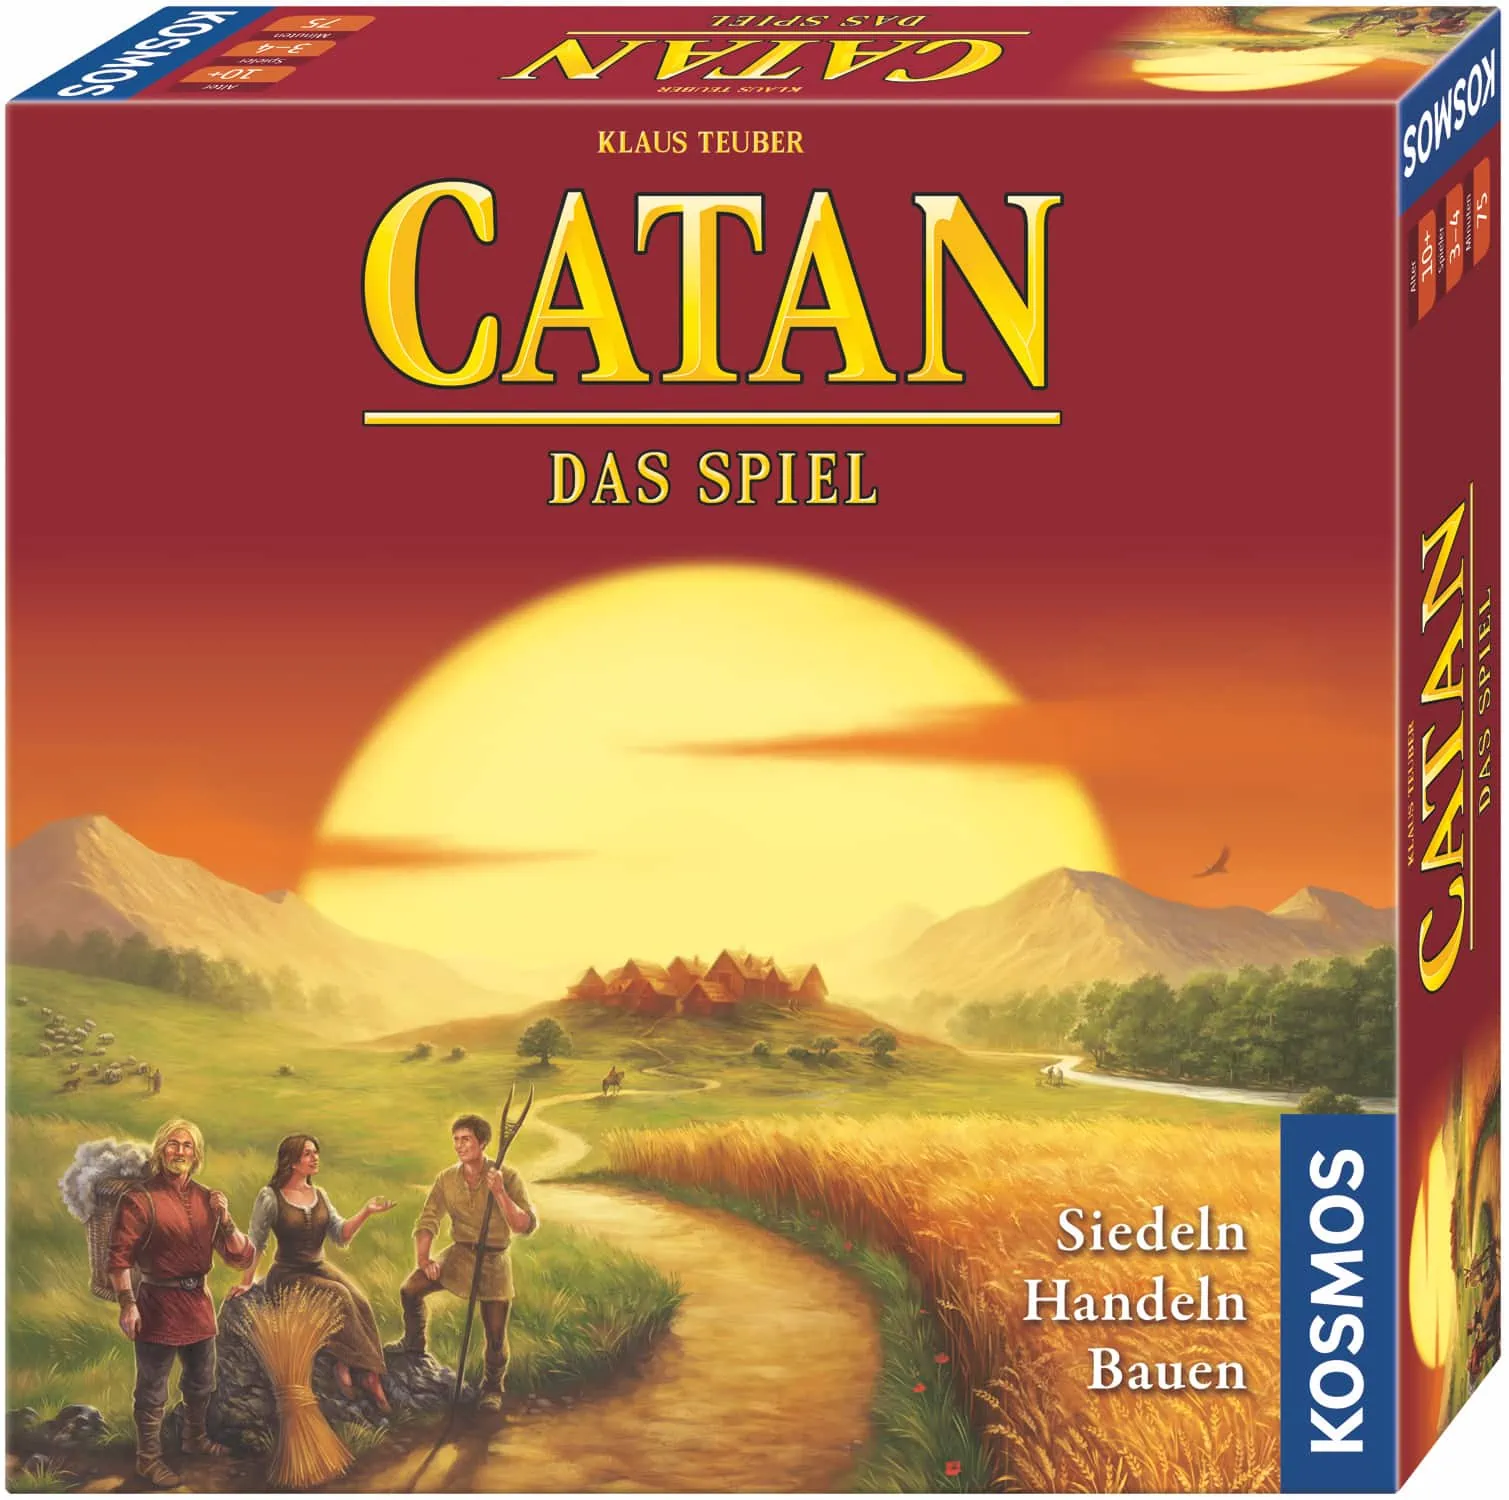 10 Super Spiele Für Freie Tage: Catan //Himbeer